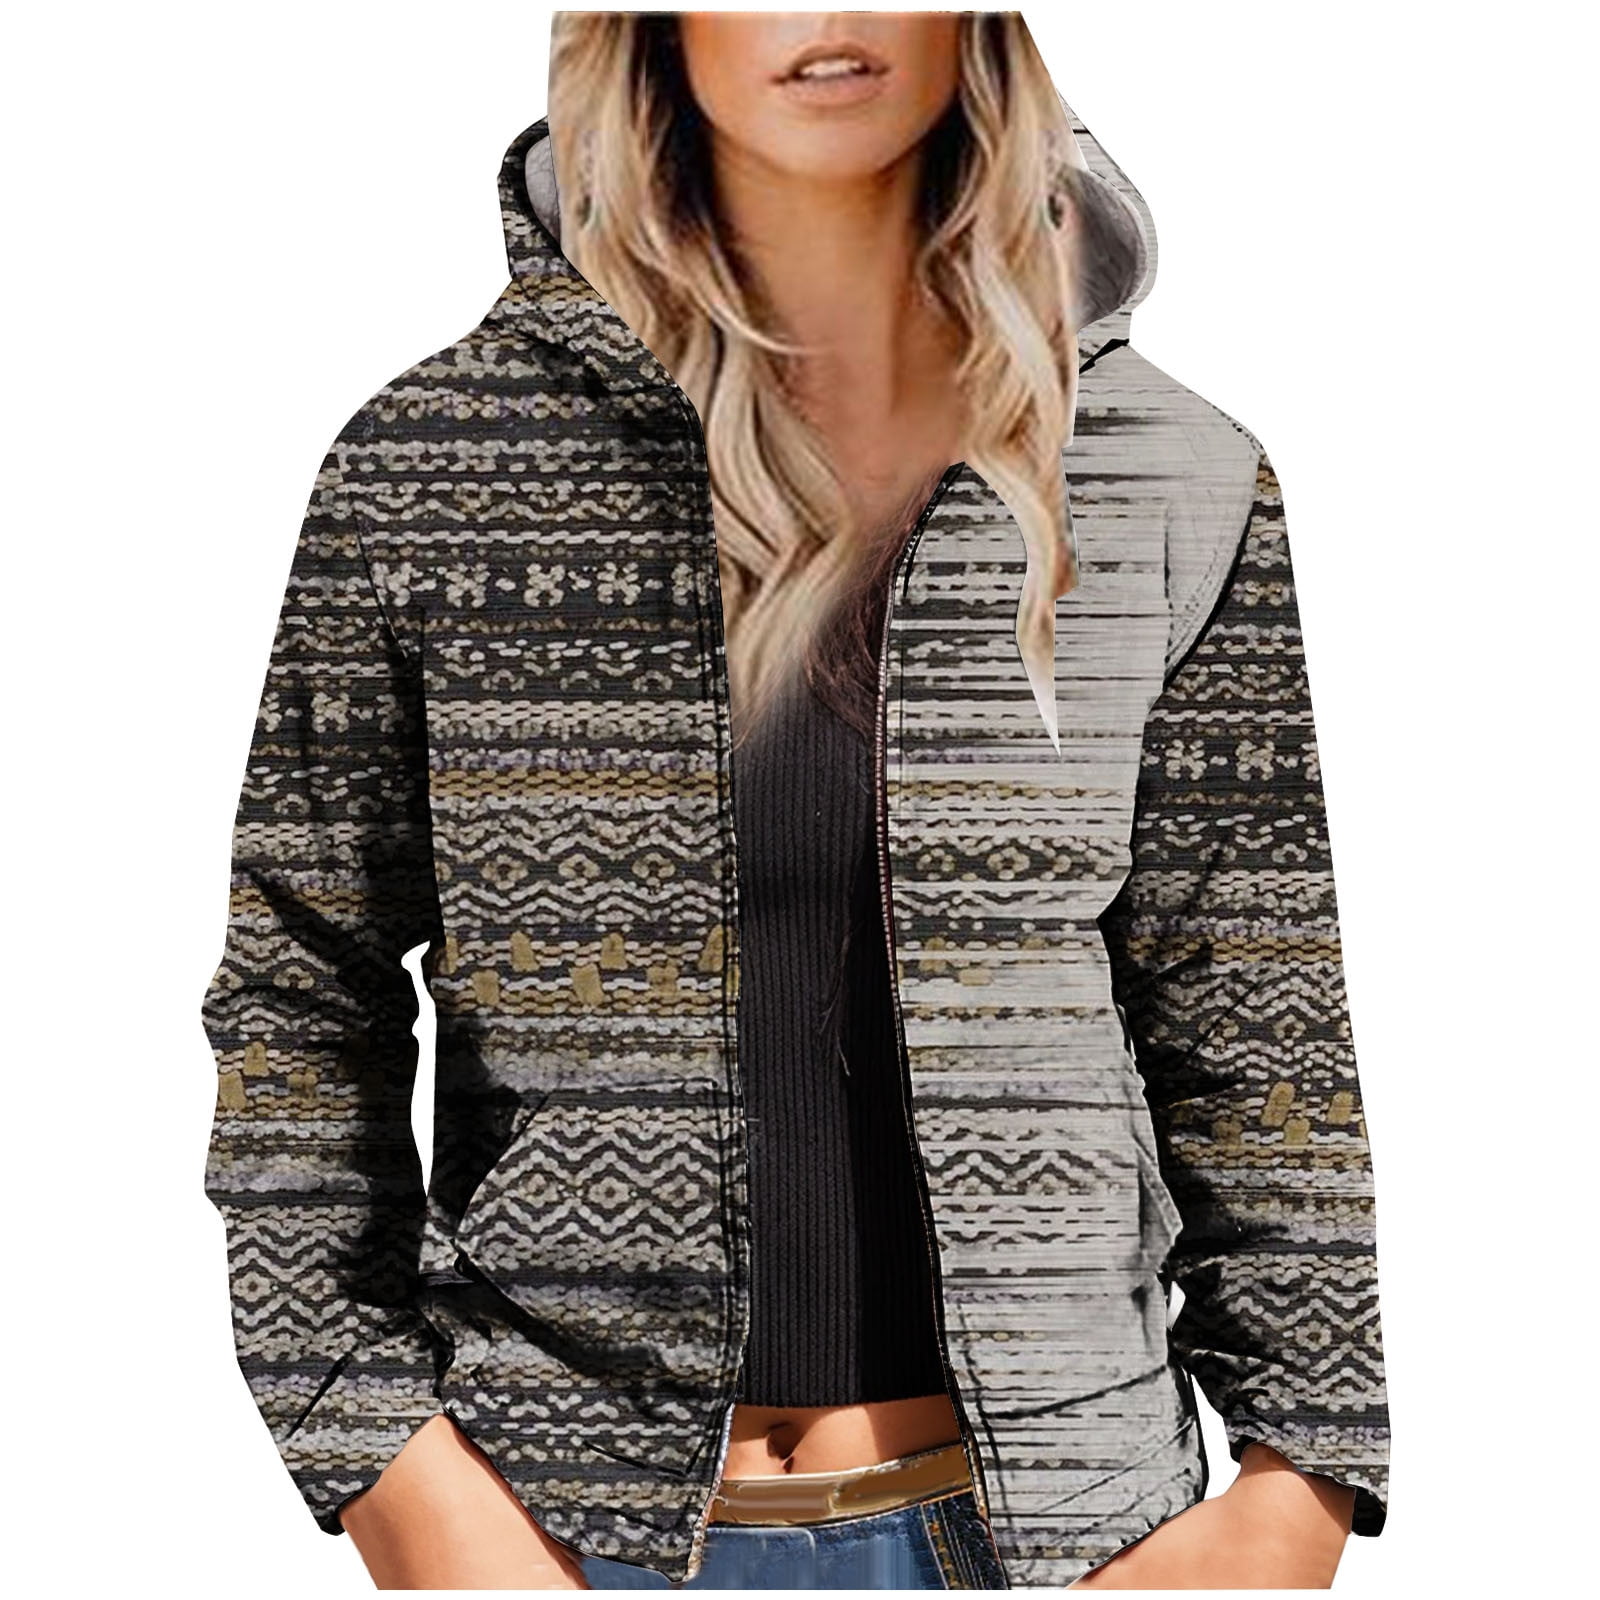 ZQGJB Sherpa Fleece Lined Warm Long Jackets for Women Fall Winter